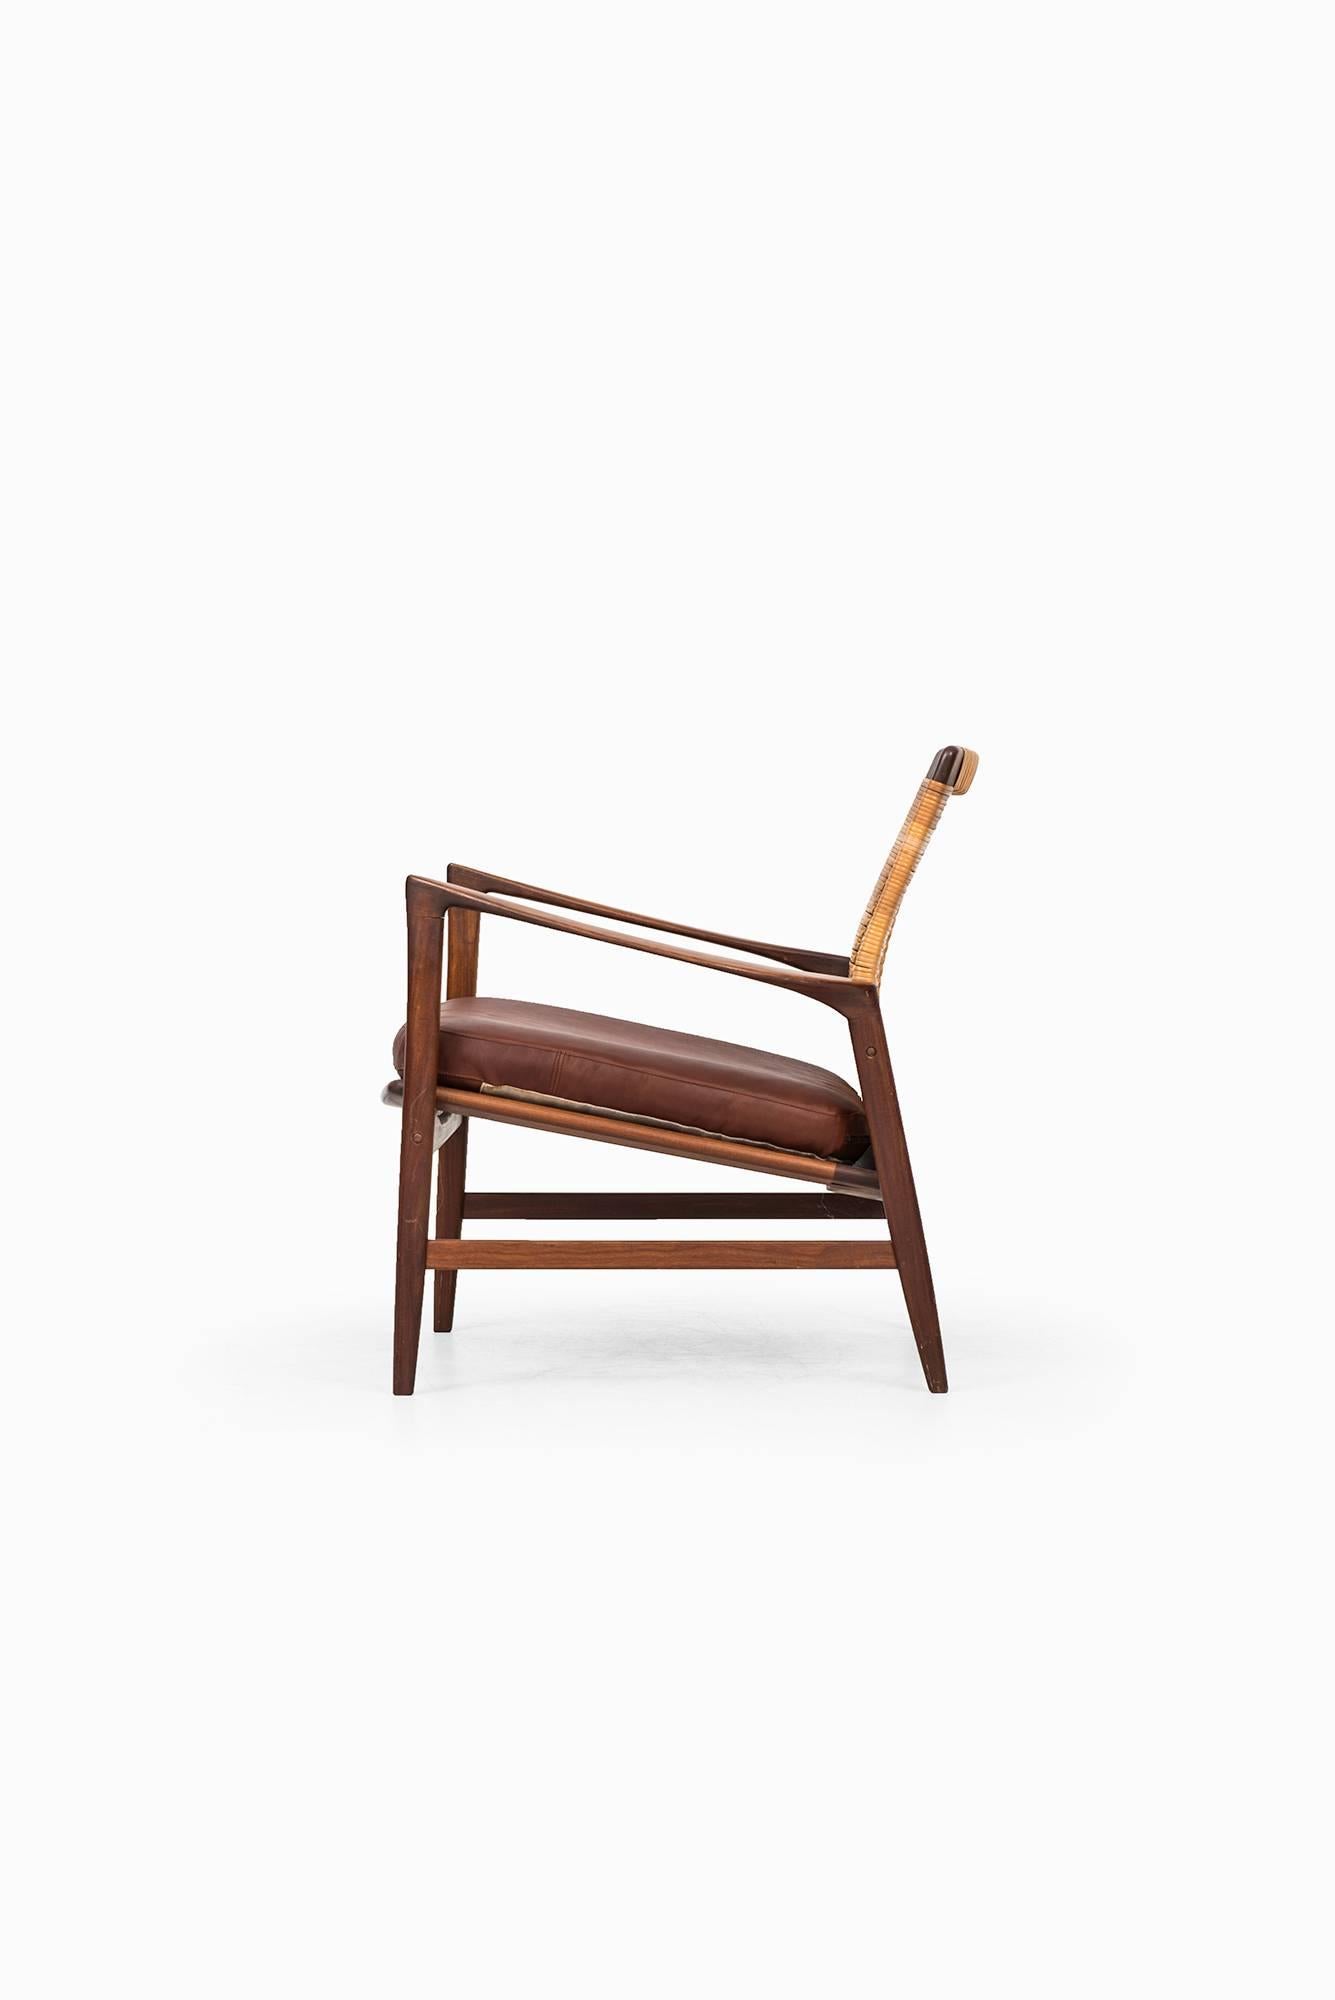 Scandinavian Modern Ib Kofod-Larsen Easy Chair Model Åre Produced by OPE in Sweden